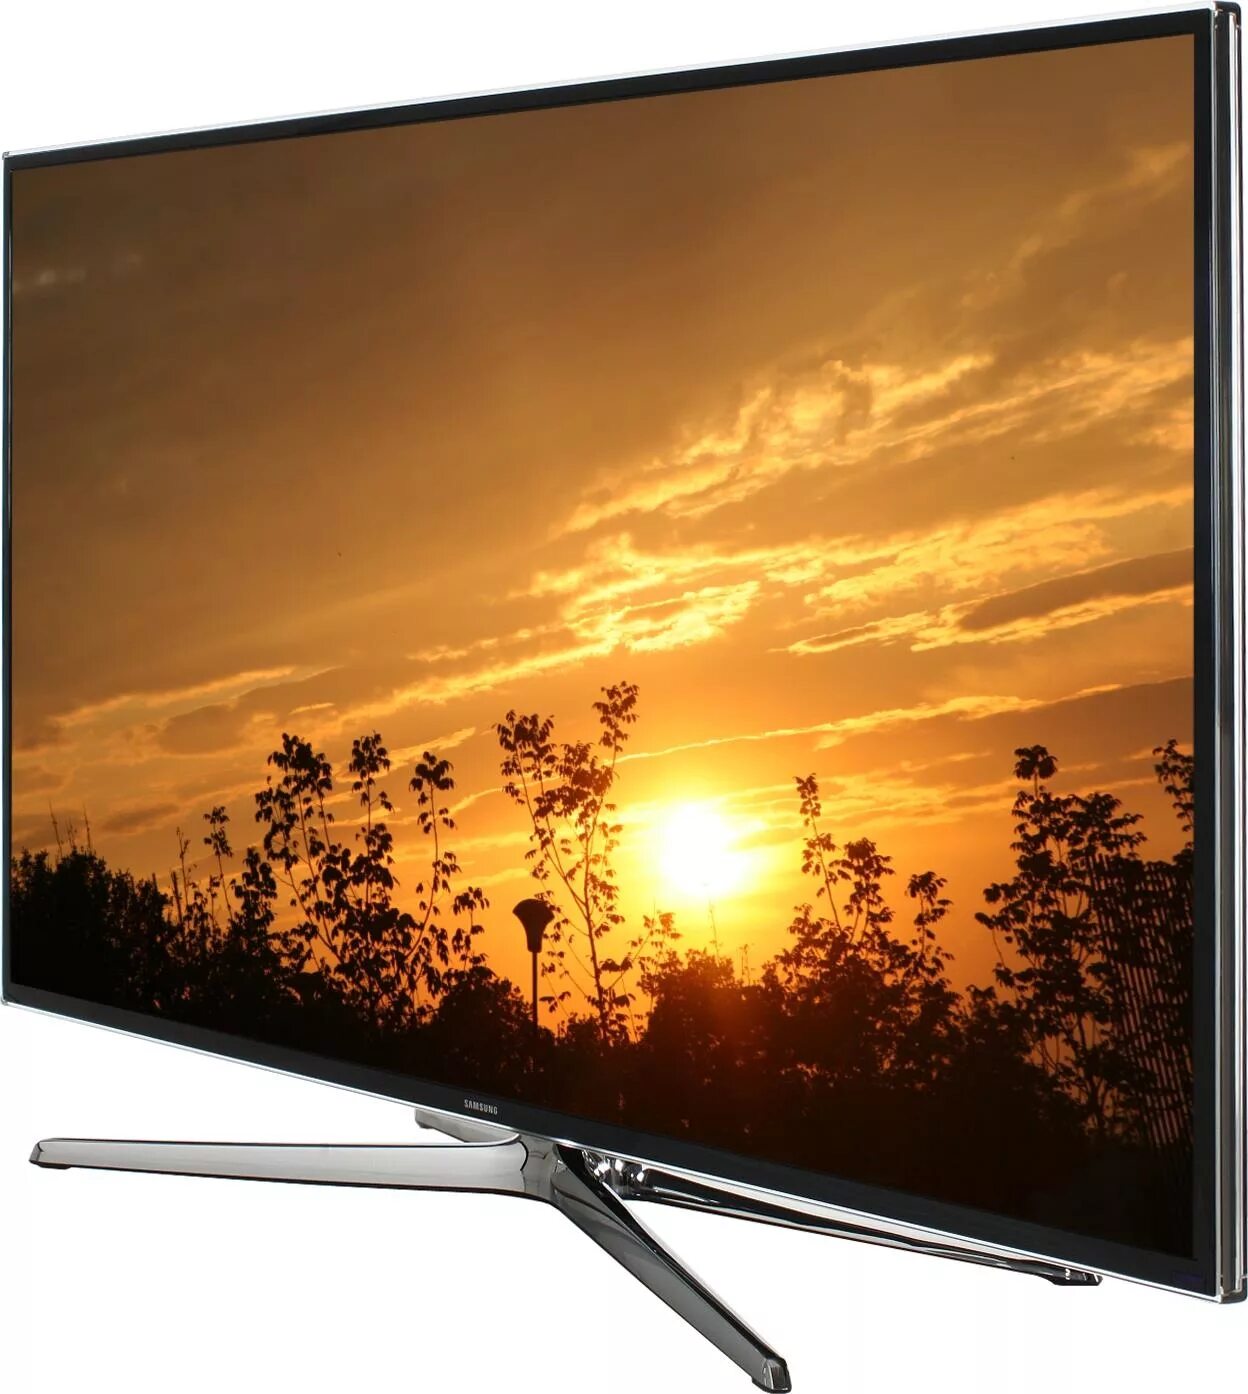 Samsung led 48 Smart TV. Samsung led 40 Smart TV 2014. Samsung led 40 Smart TV 2013. Телевизор Samsung ue48h6230. Купить лучший телевизор 40 дюймов